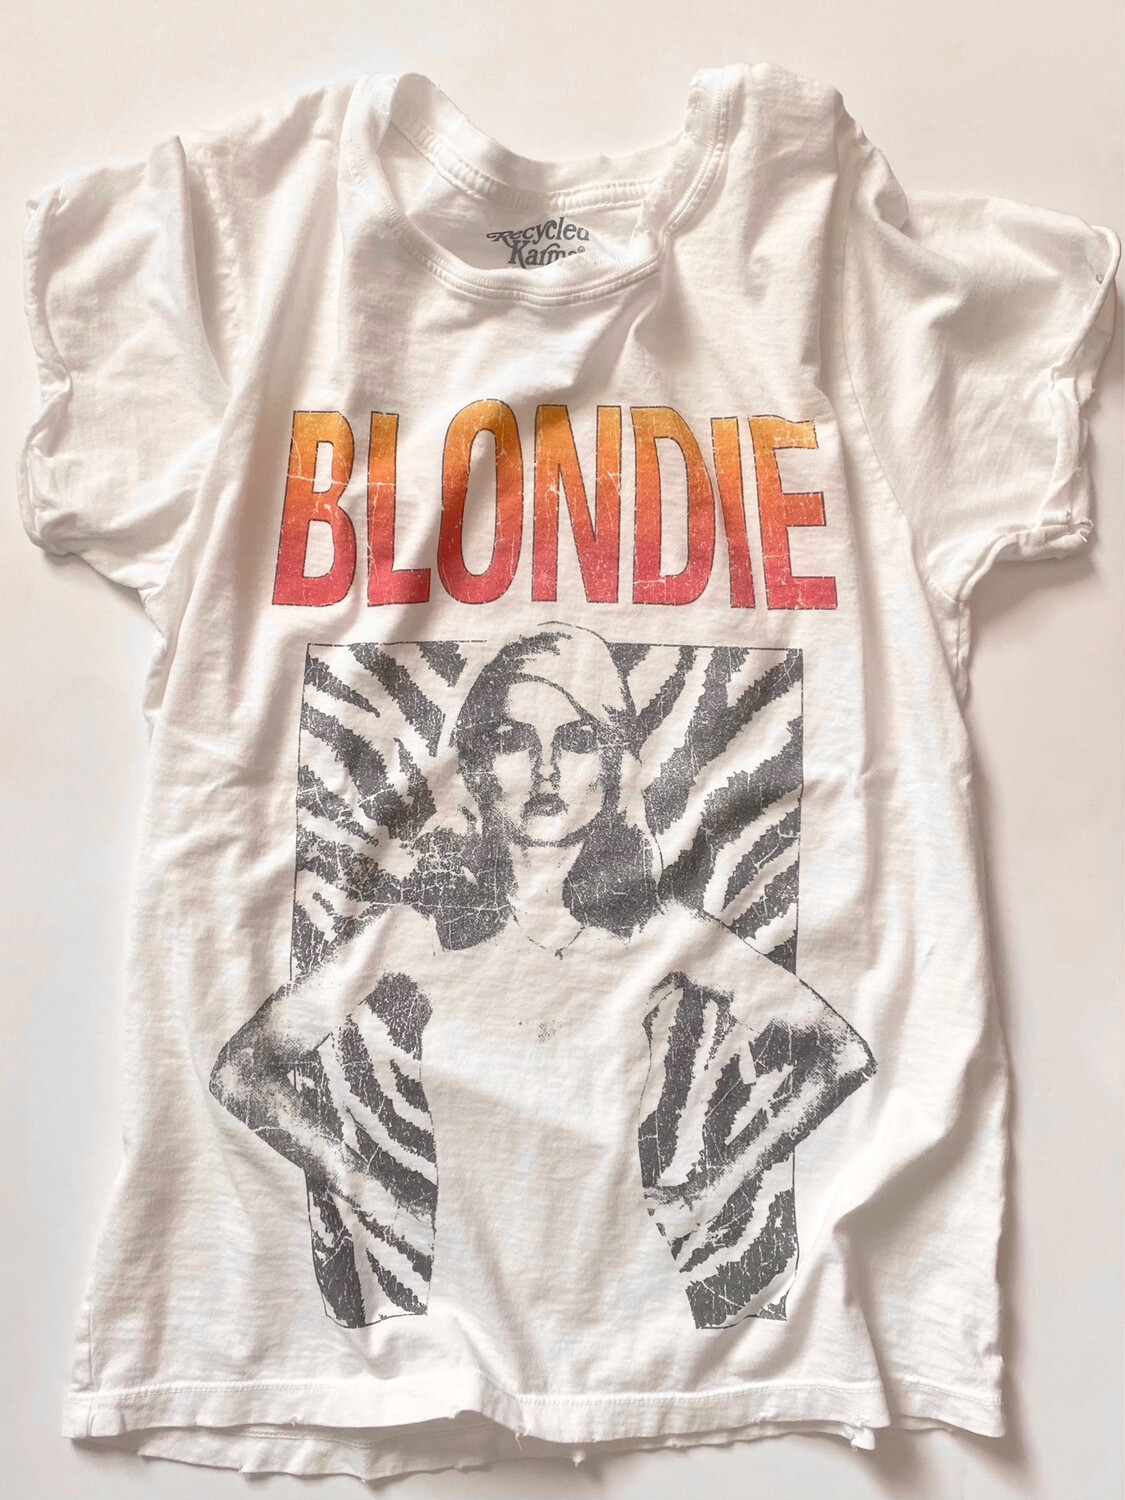 blondie ‘vintage’ tee - recycled karma